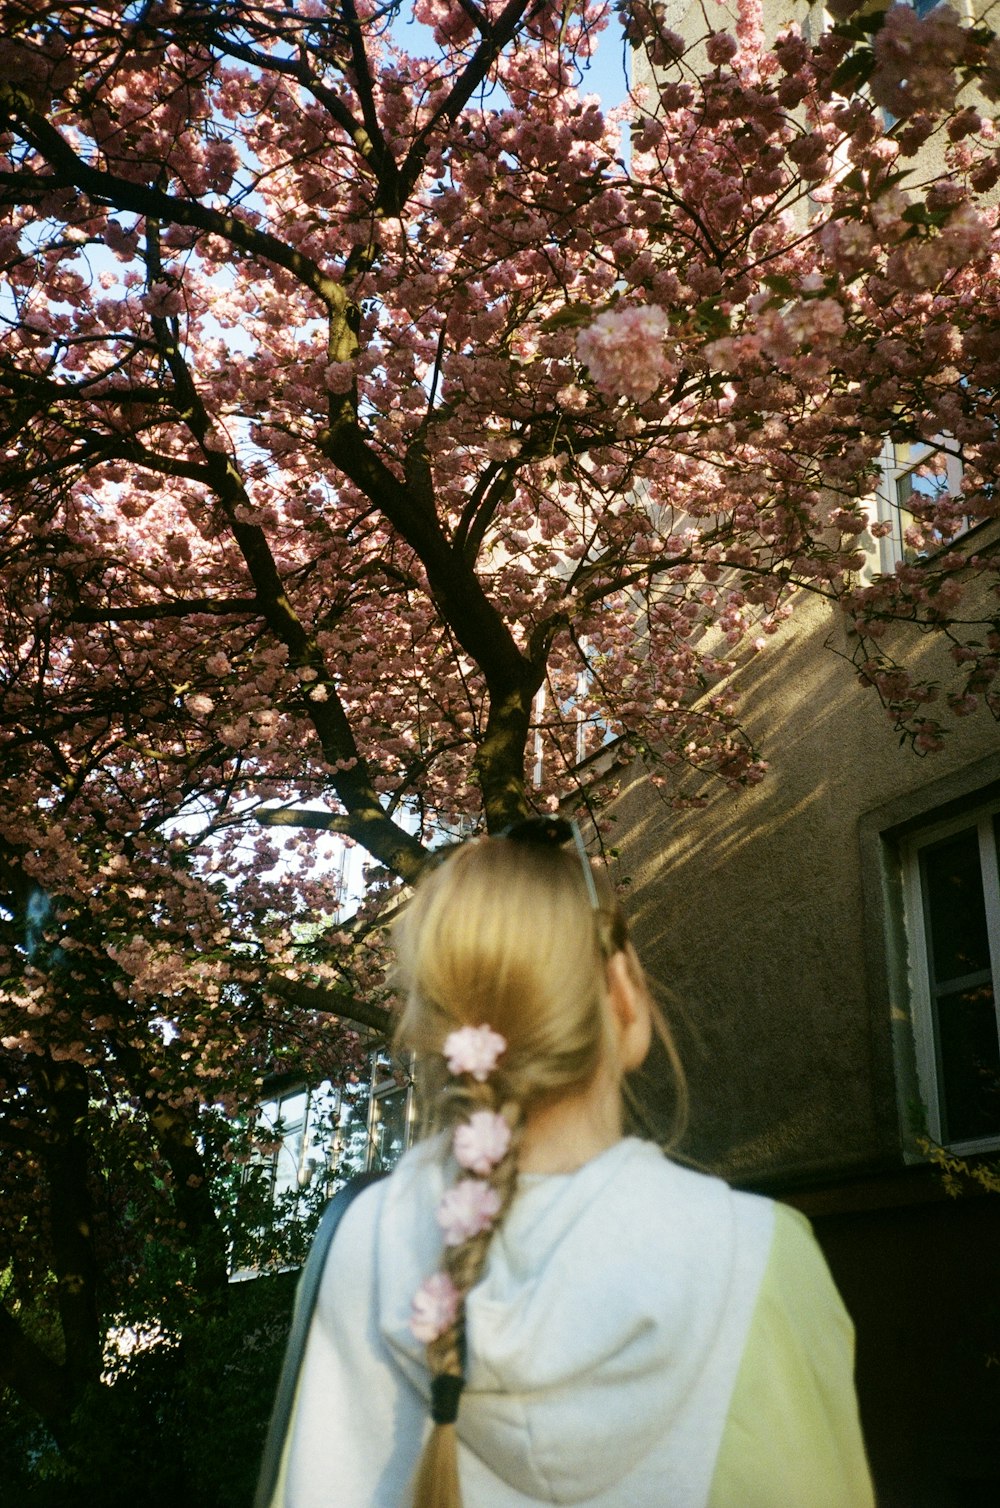 menina na camisa branca que está sob a árvore rosa da flor da cerejeira durante o dia